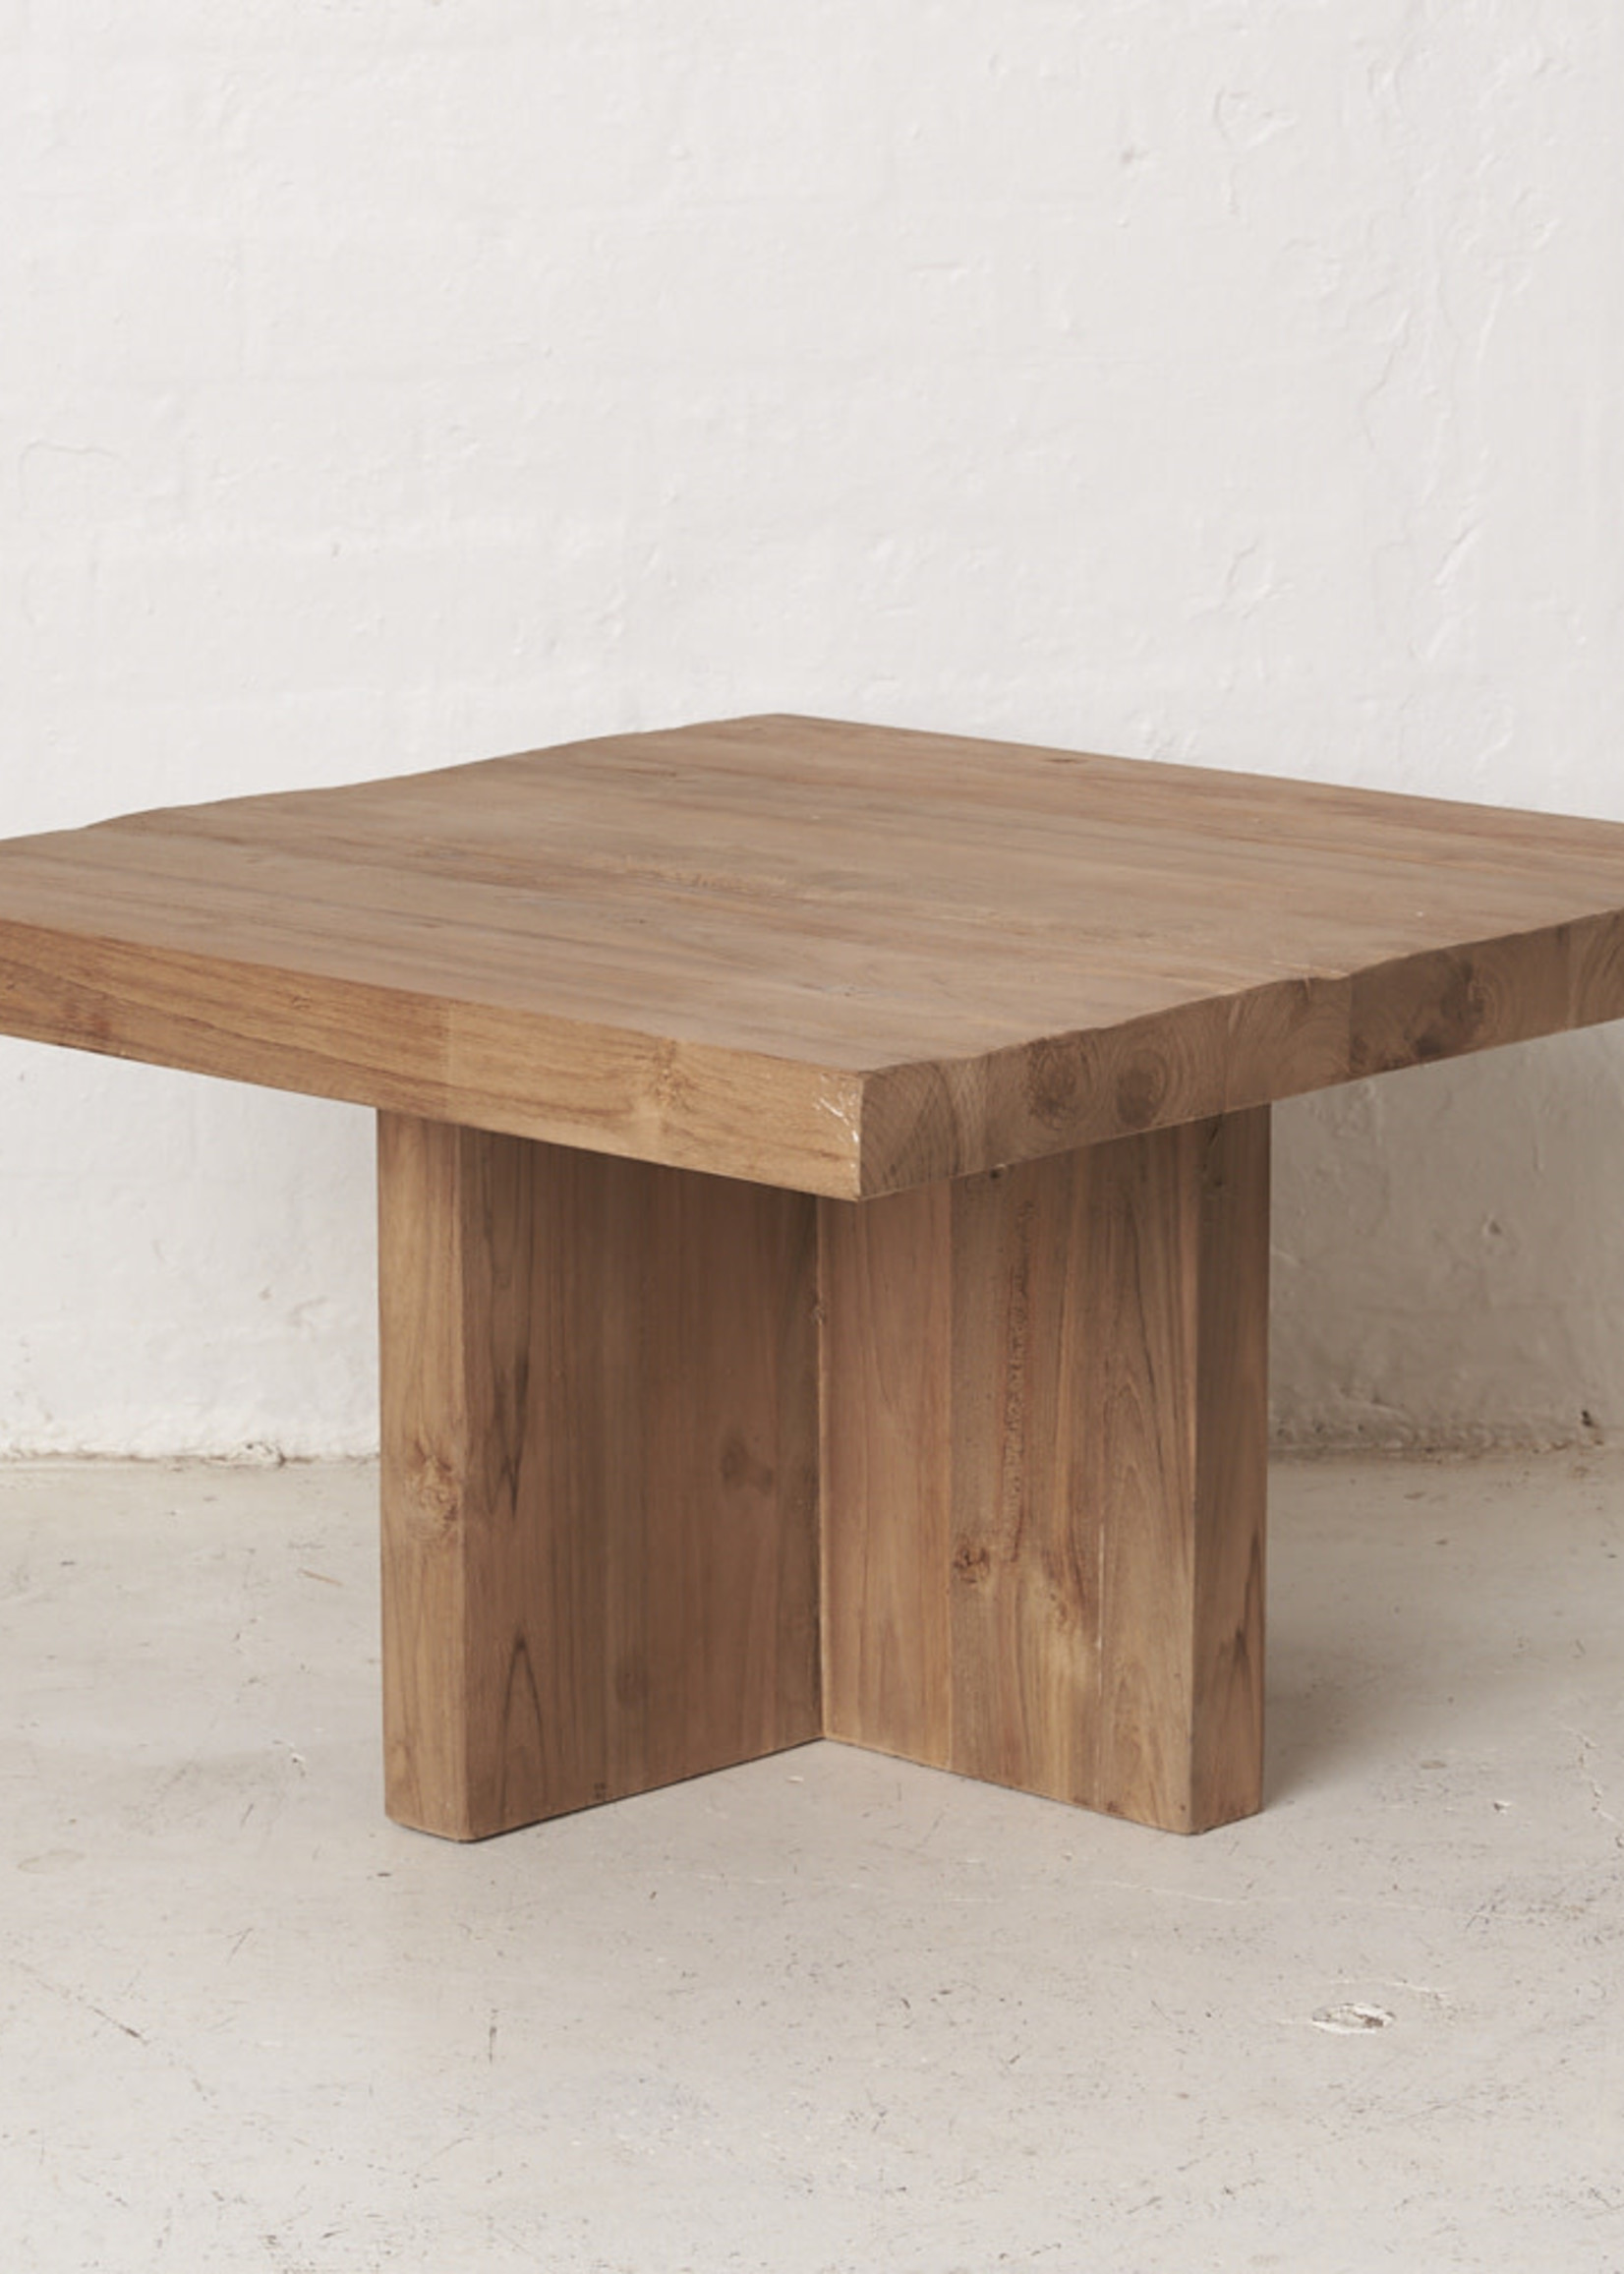 Rustic Square Table Medium